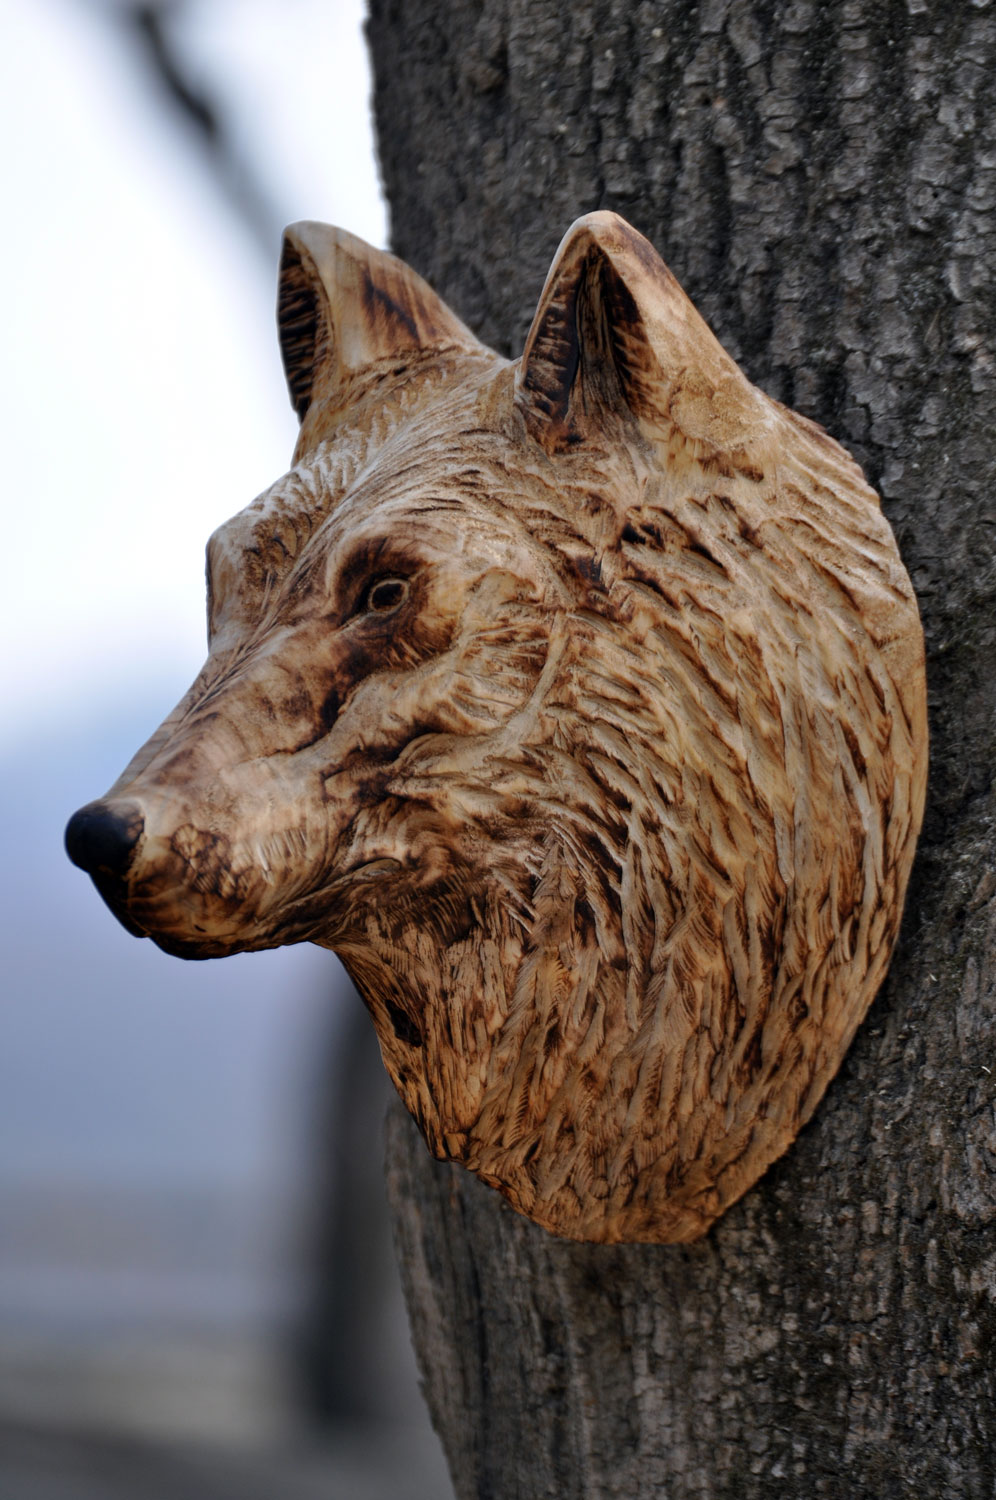 vlk-drevorezba-plastika-vyrezavani-carwing-woodcarving-trofej-hlava-radekzdrazil-20190331-02